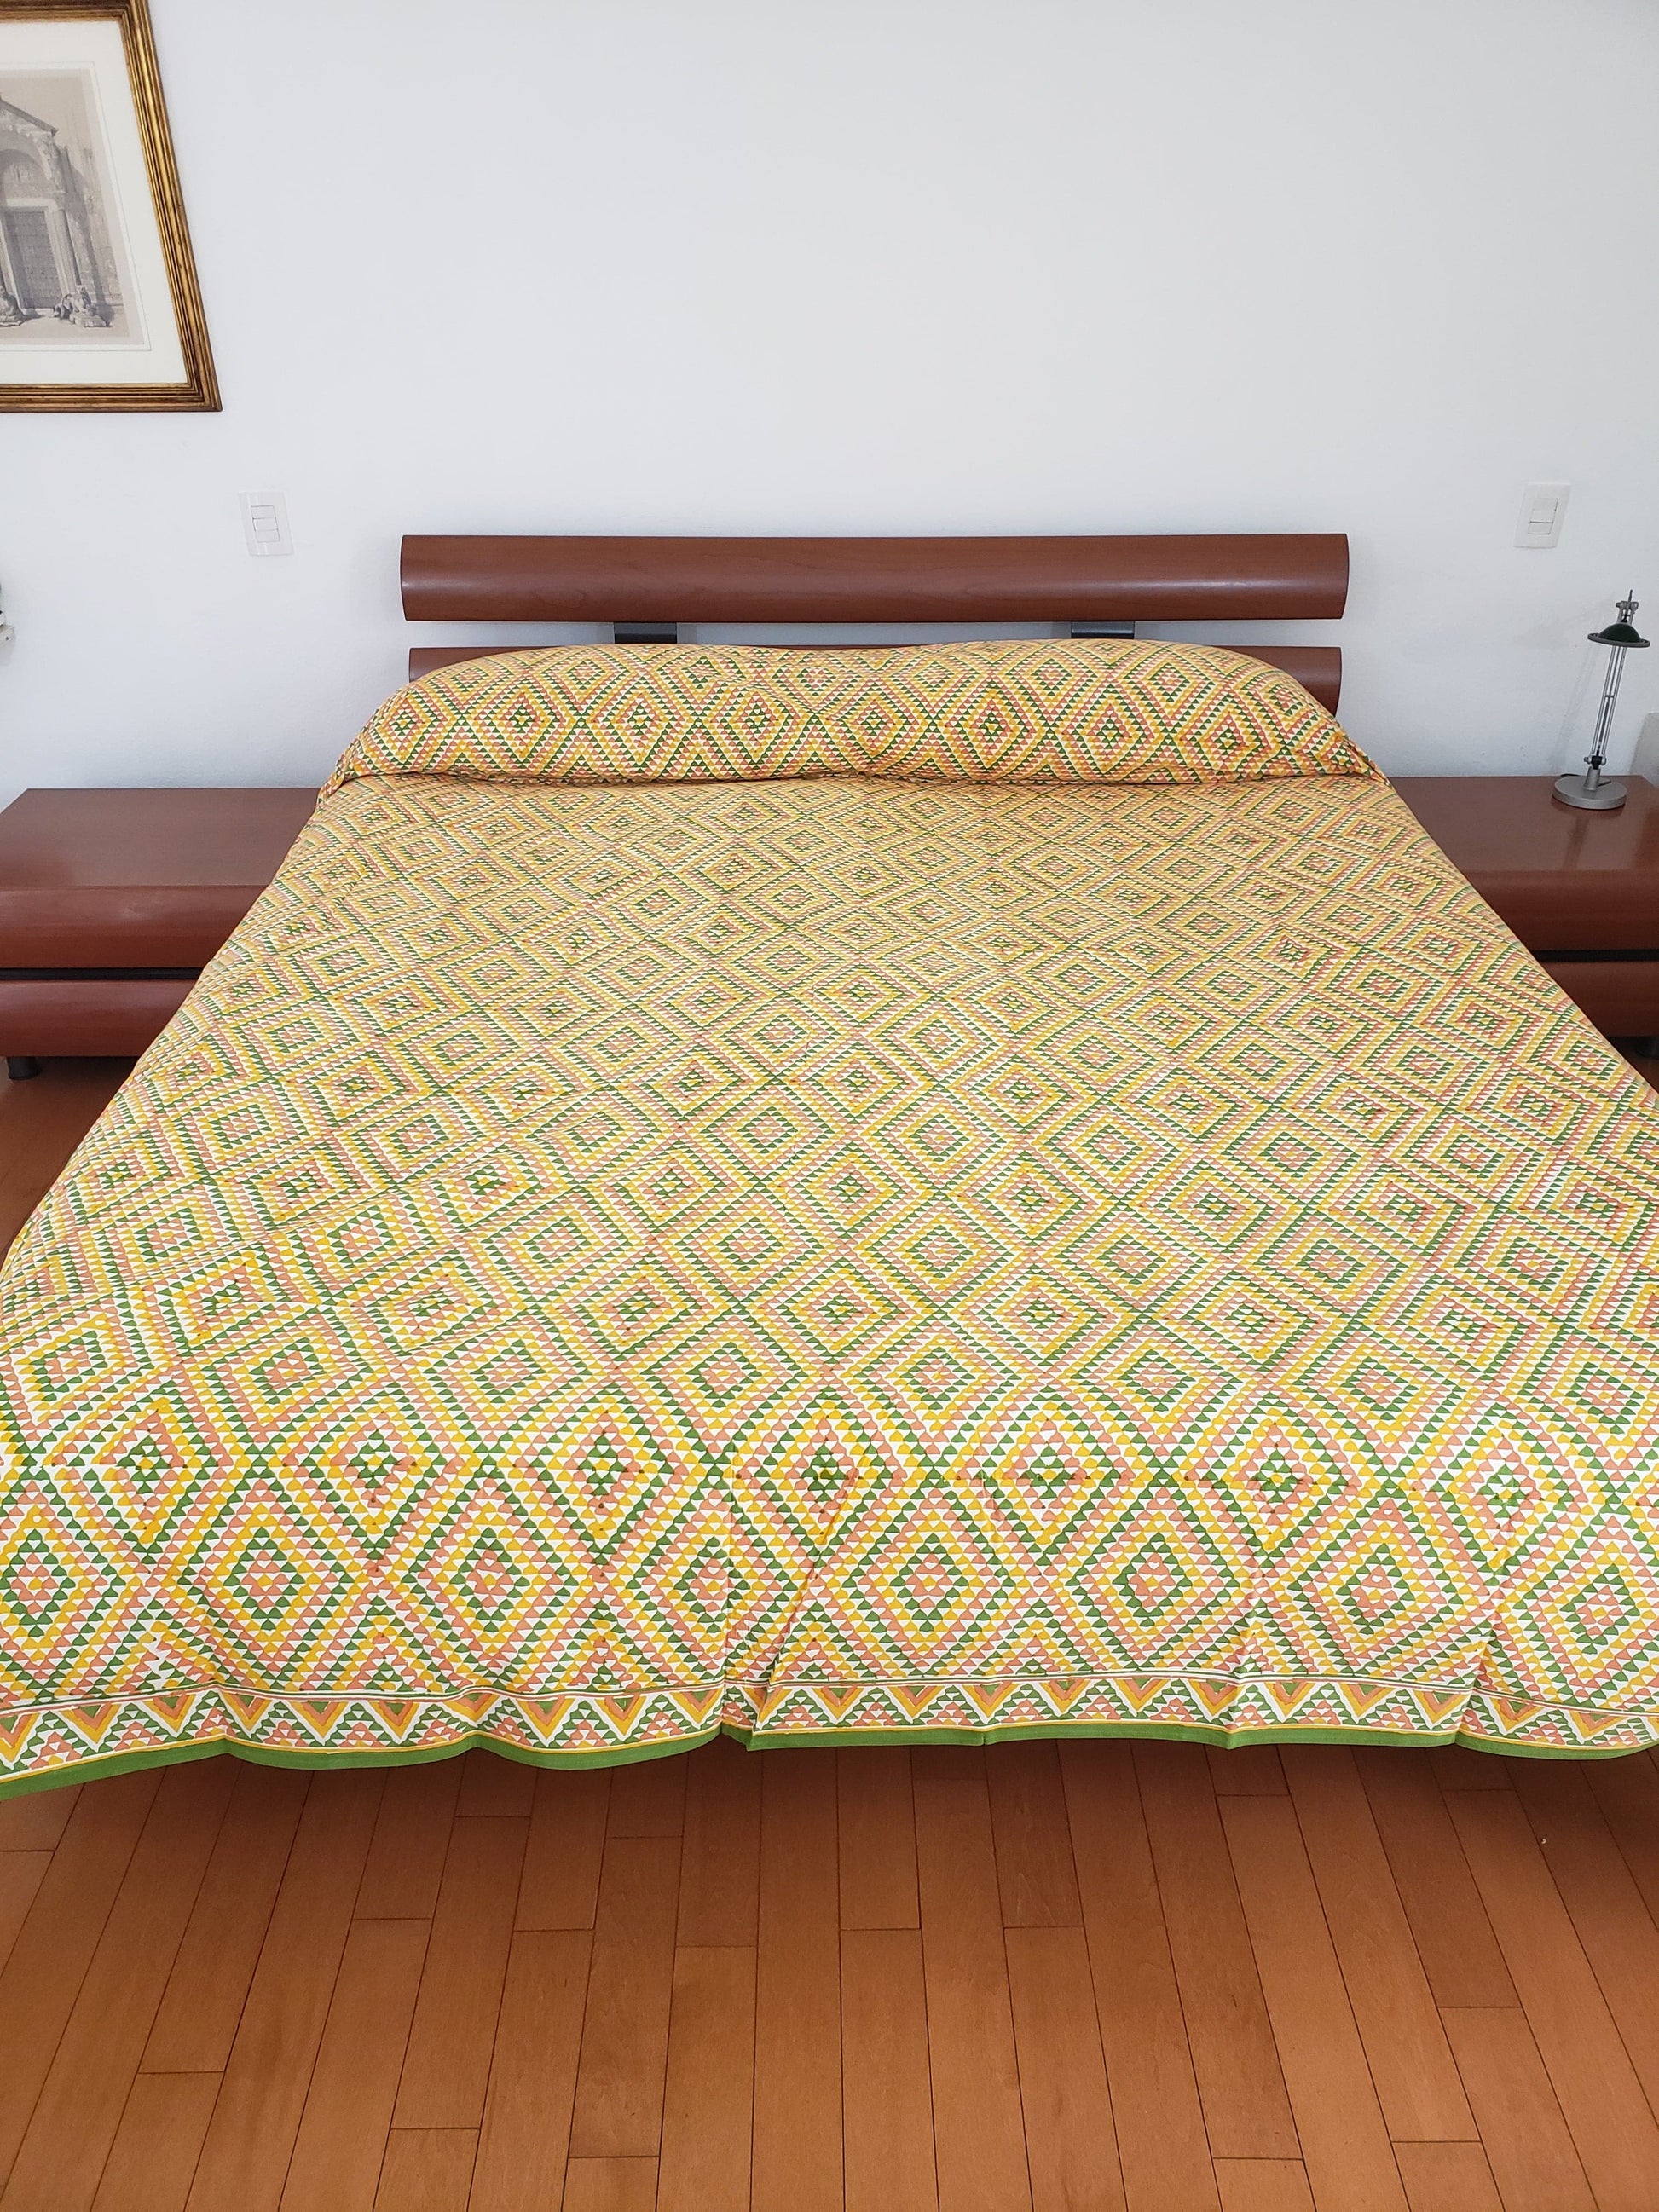 Detalle de sobrecama 100% algodón estampado a mano, con diseño en triángulos color ocre, verde y amarillo. Hecho en la India.